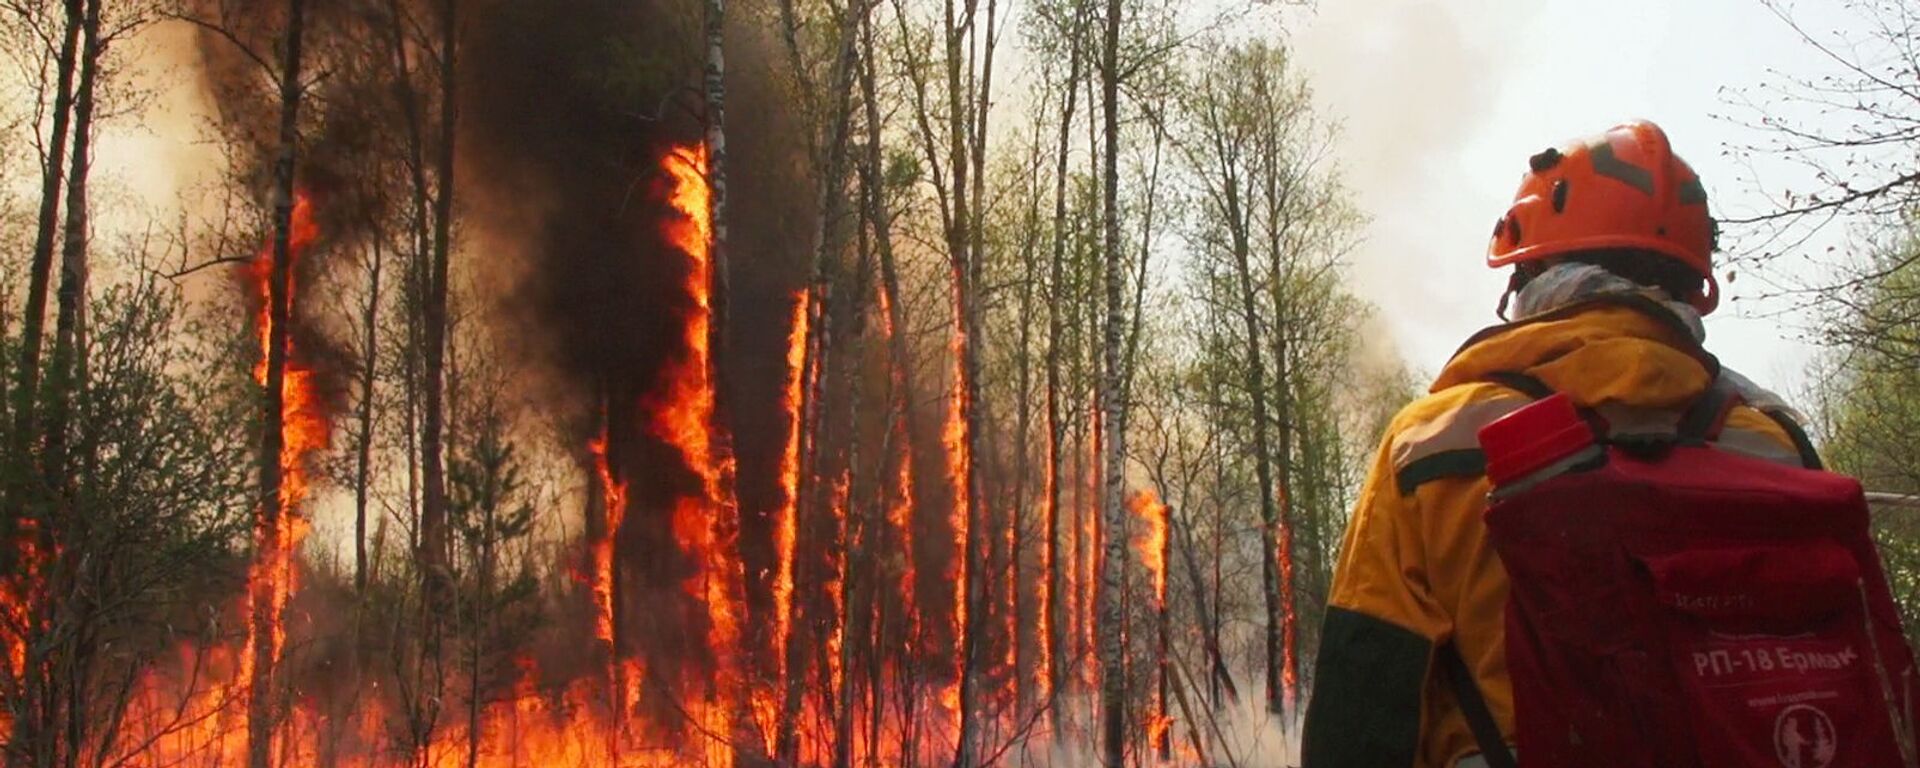 Yakutistan’da acil durum ilan edildi: Orman yangınları yerleşim yerlerine sıçradı - Sputnik Türkiye, 1920, 14.10.2021